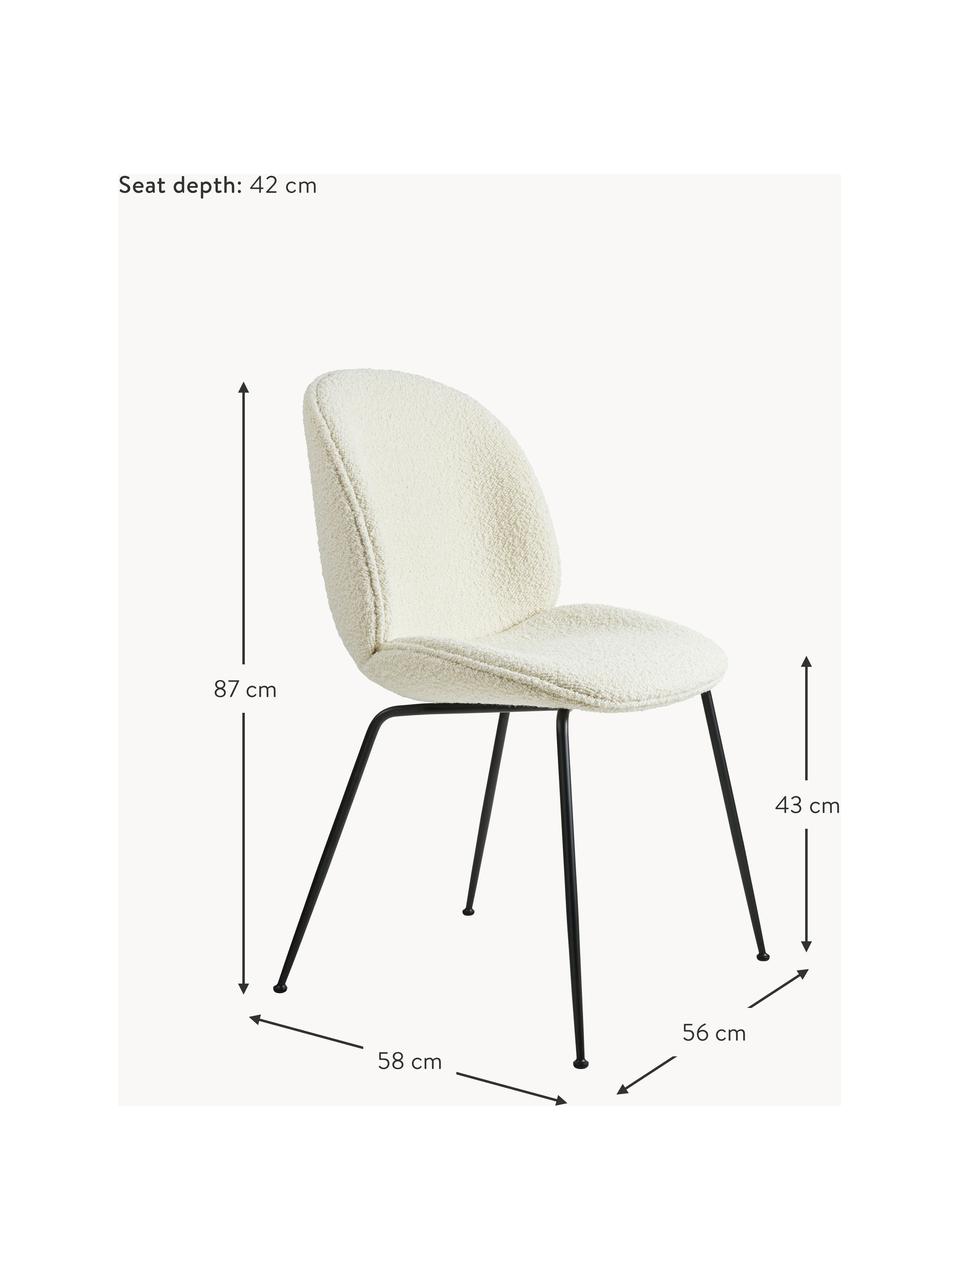 Krzesło tapicerowane Bouclé Beetle, Tapicerka: Bouclé (100% poliester), Nogi: stal powlekana, Bouclé biały, czarny matowy, S 56 x G 58 cm